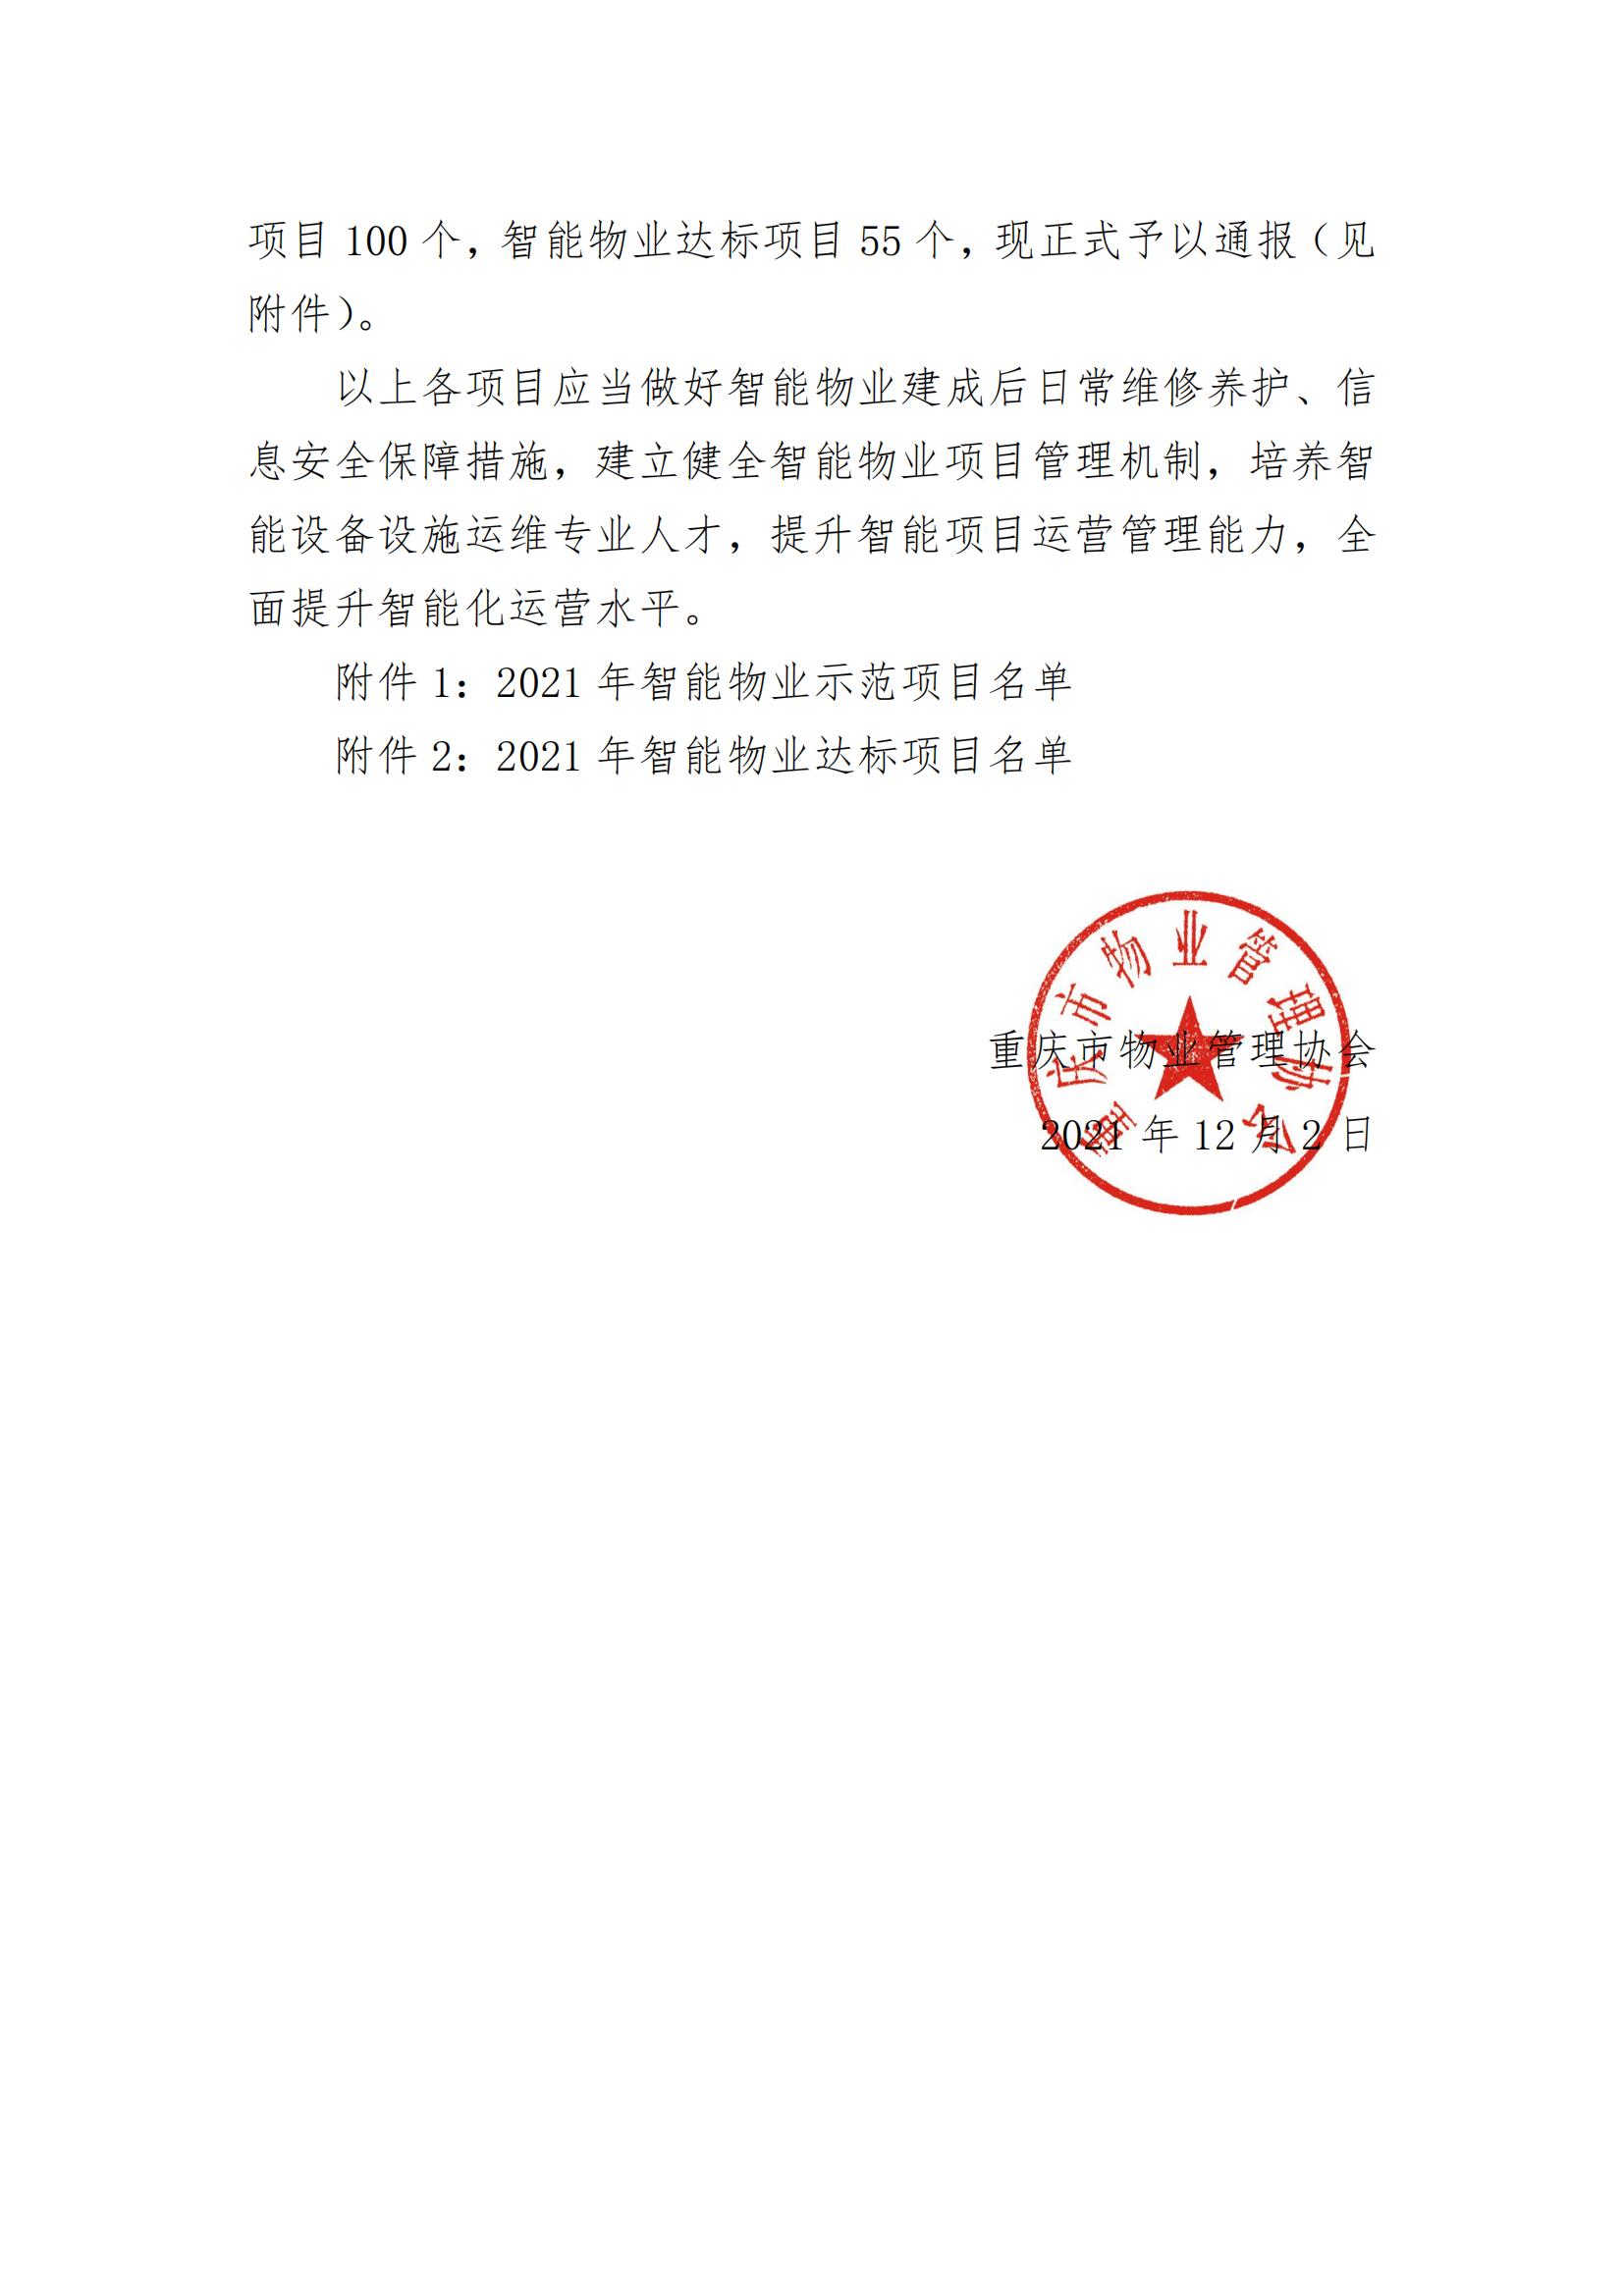 重庆市物业管理协会关于2021年智能物业项目检查验收结果的通报(图2)